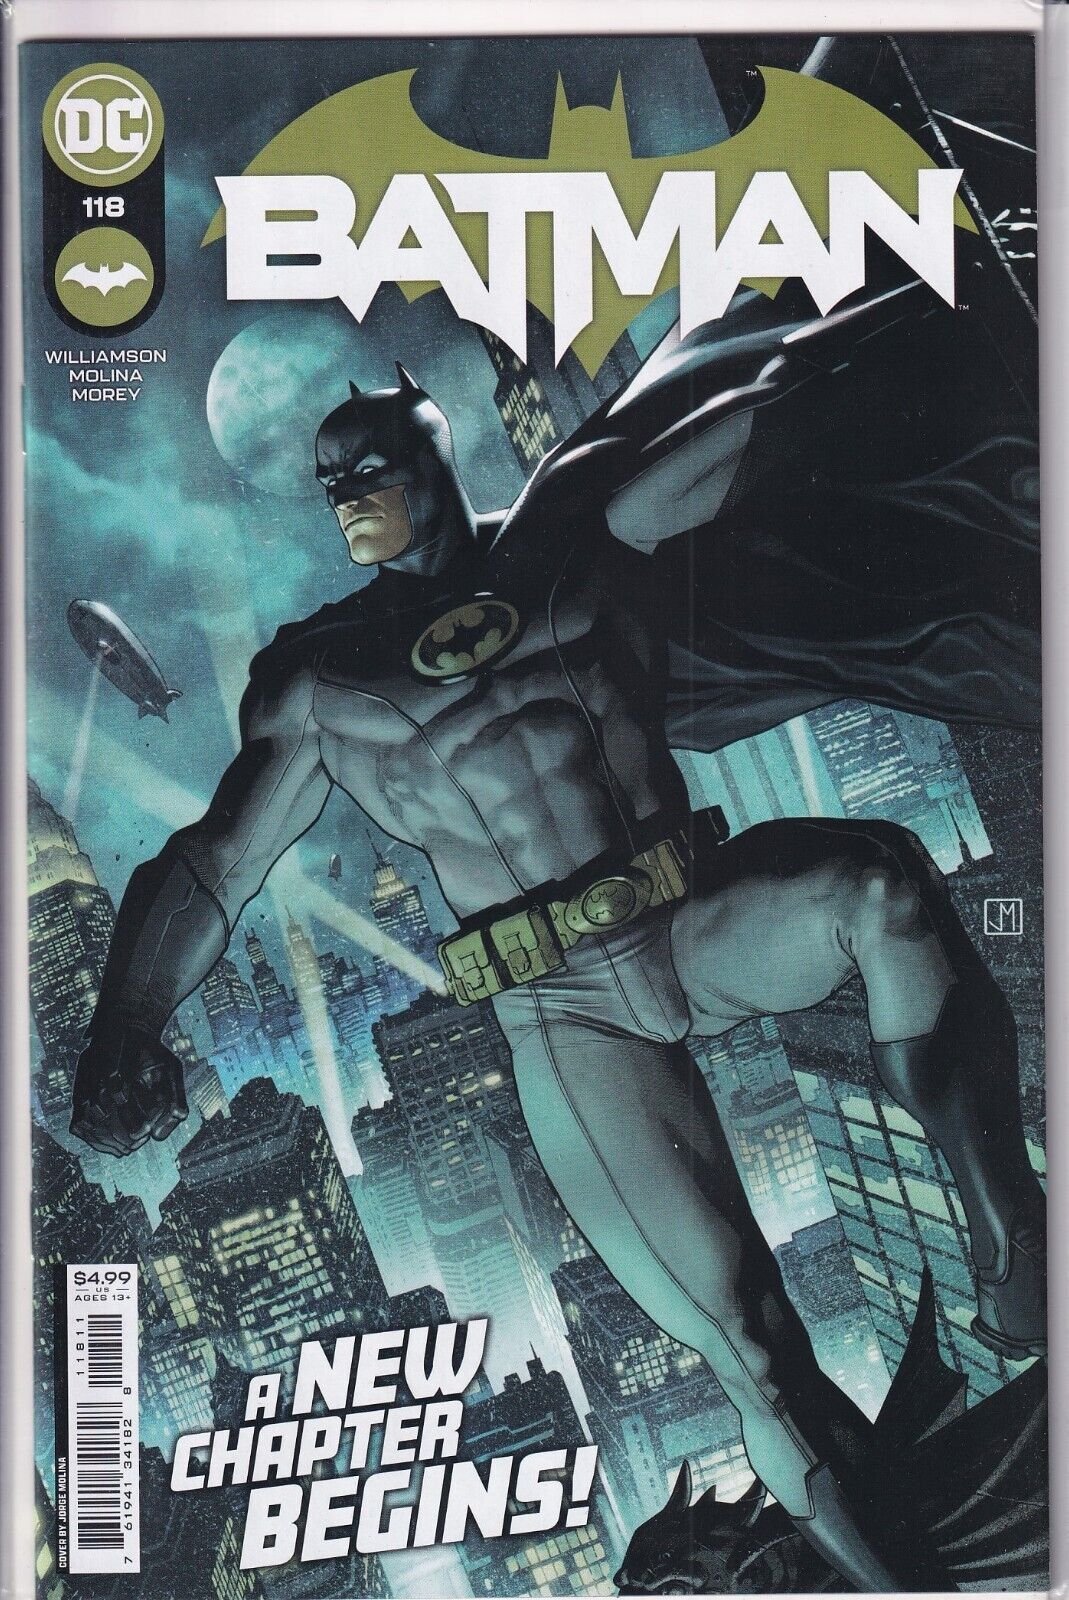 37217: DC Comics BATMAN #118 NM Grade